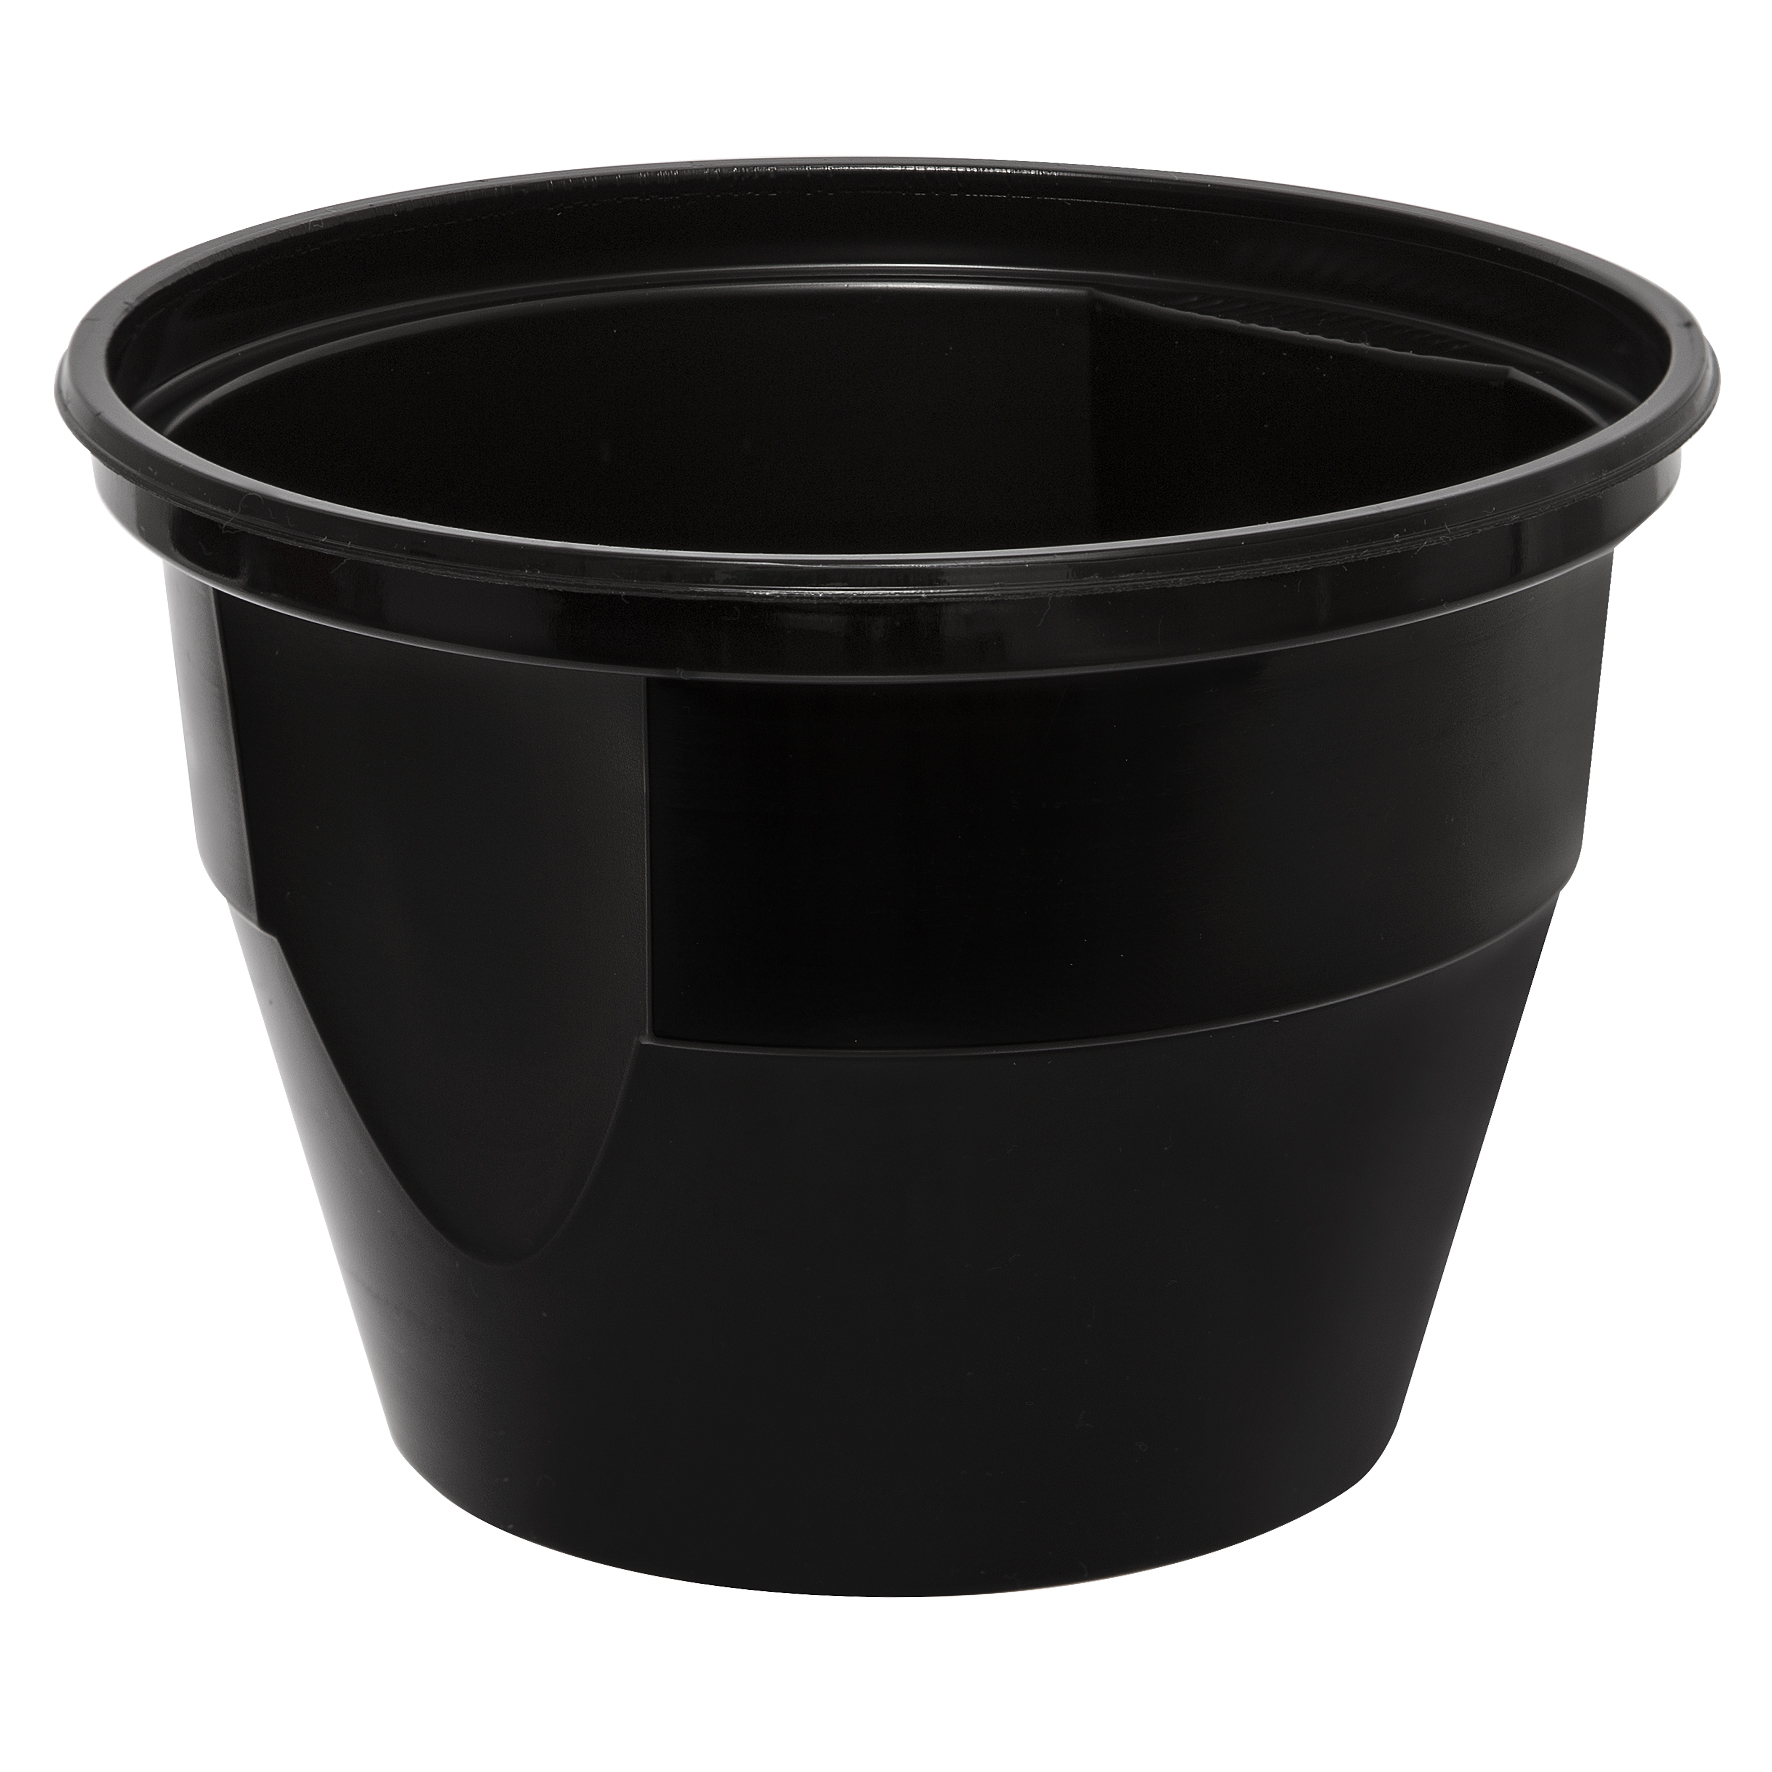 MEHRWEG Mikrowellen Suppenbowl black PP20, 600/680ml, mit klarem Deckel, 450 Stück/Karton